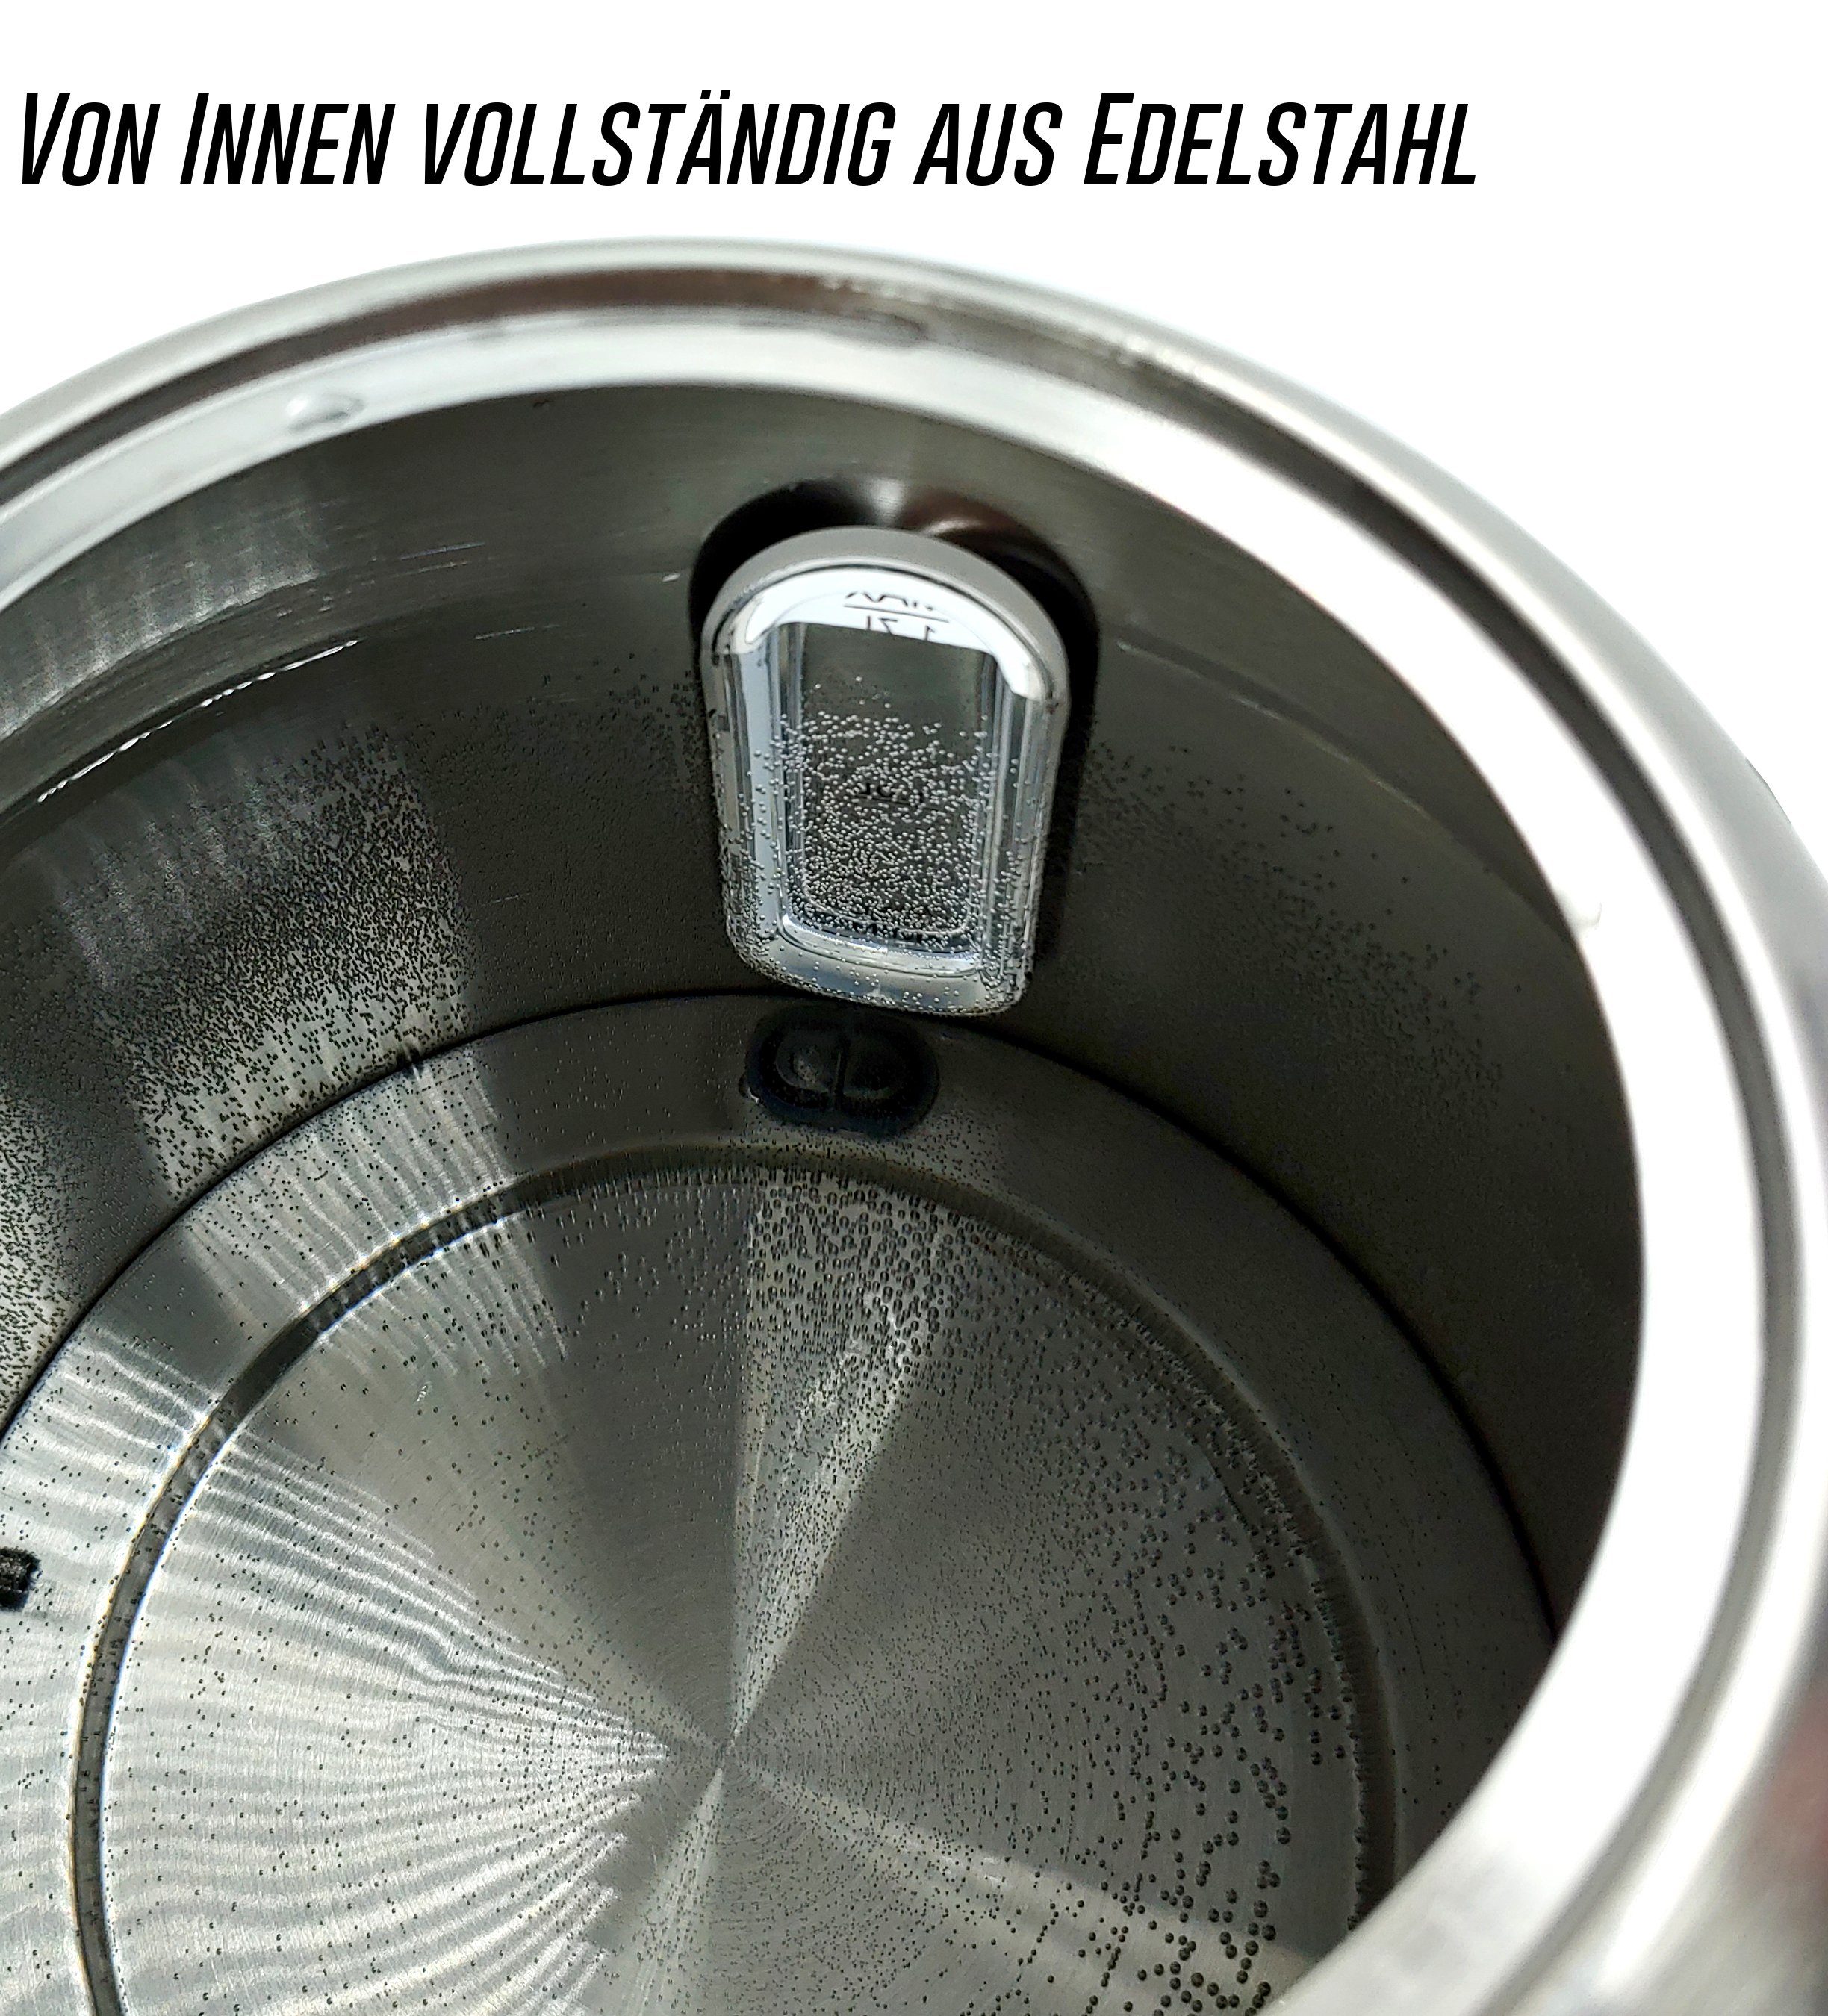 2200W, Wasserkocher Germany Edelstahlgehäuse, W, l Wasserkocher Edelstahl 1,7 Temperatureinstellung, LED 2200 LMG & Schnellkochfunktion Temperatureinstellung, Glas